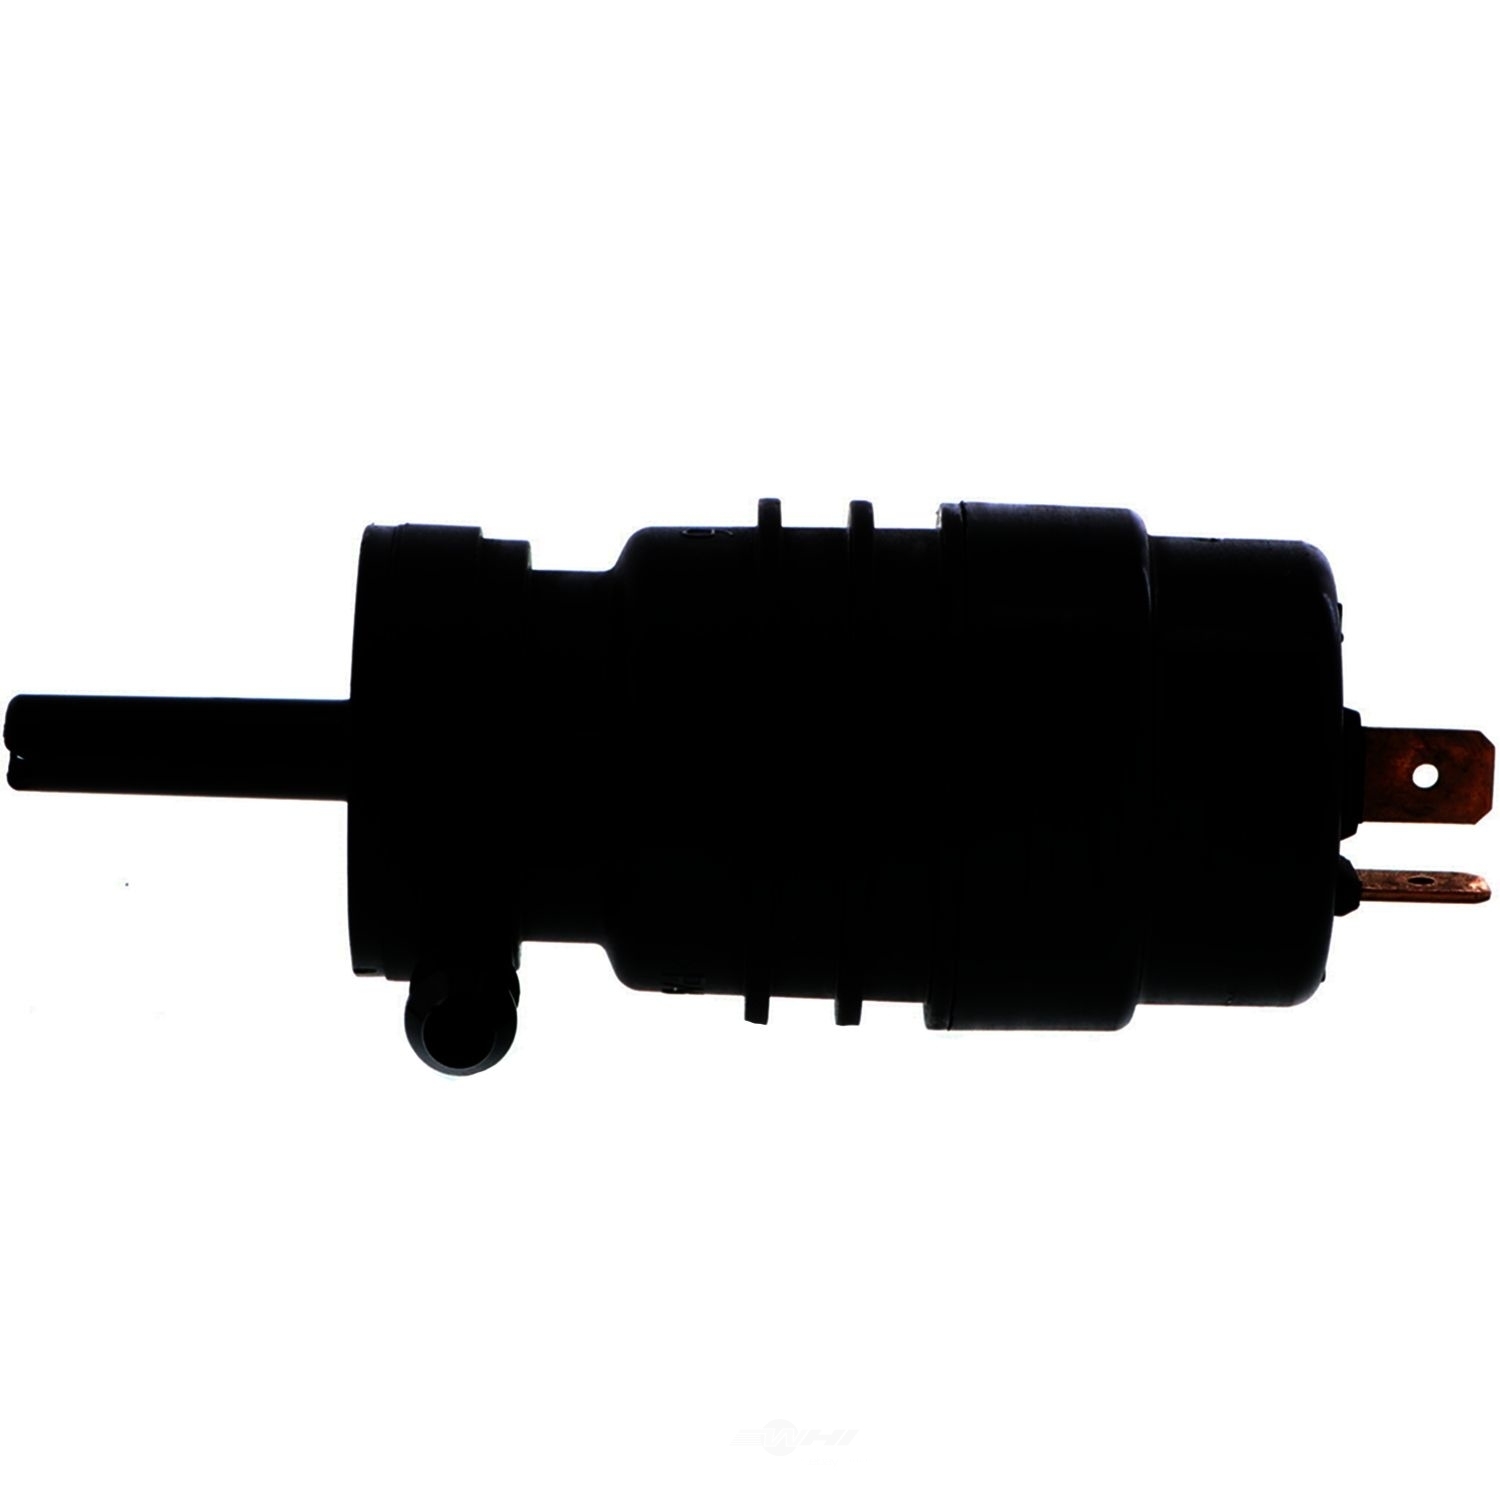 VDO - Headlight Washer Pump - SIE 246-082-008-014Z